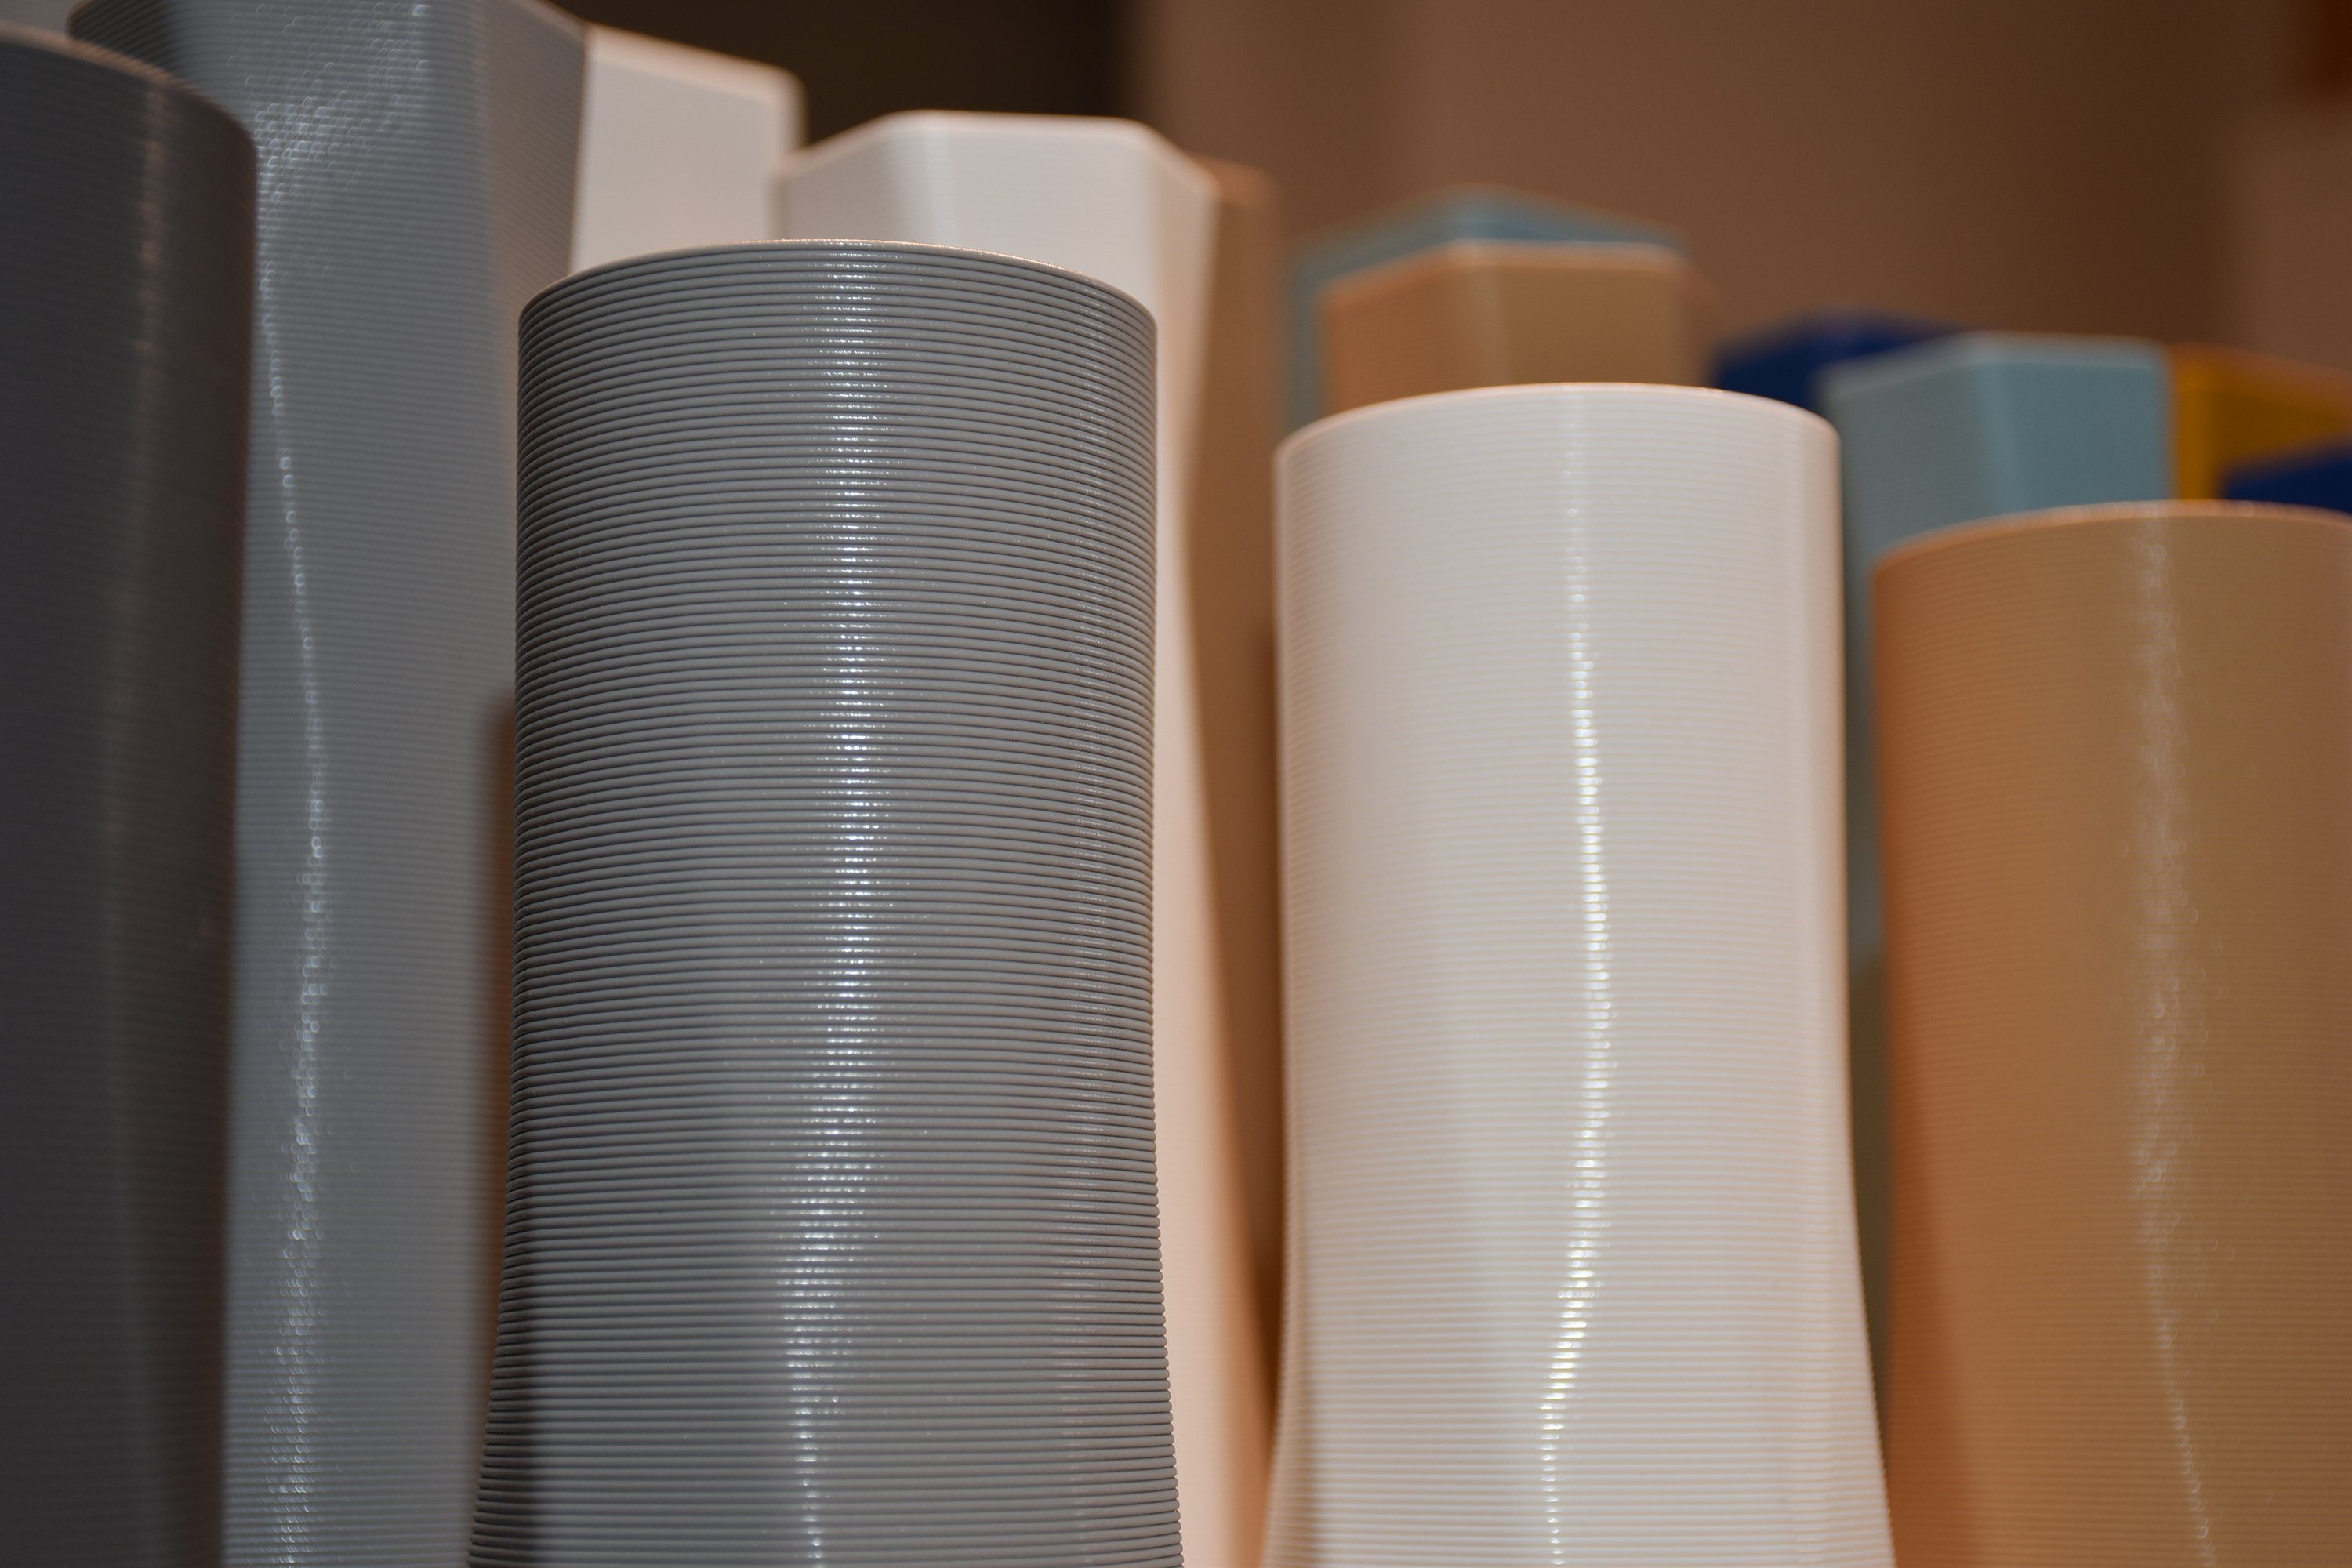 - Wasserdicht; innerhalb viele vase Farben, Vasen, Leichte (Rillung) Grau Struktur Materials (basic), (Einzelmodell, 100% square - des Vase), Shapes Dekovase 3D 3D-Druck Decorations 1 the